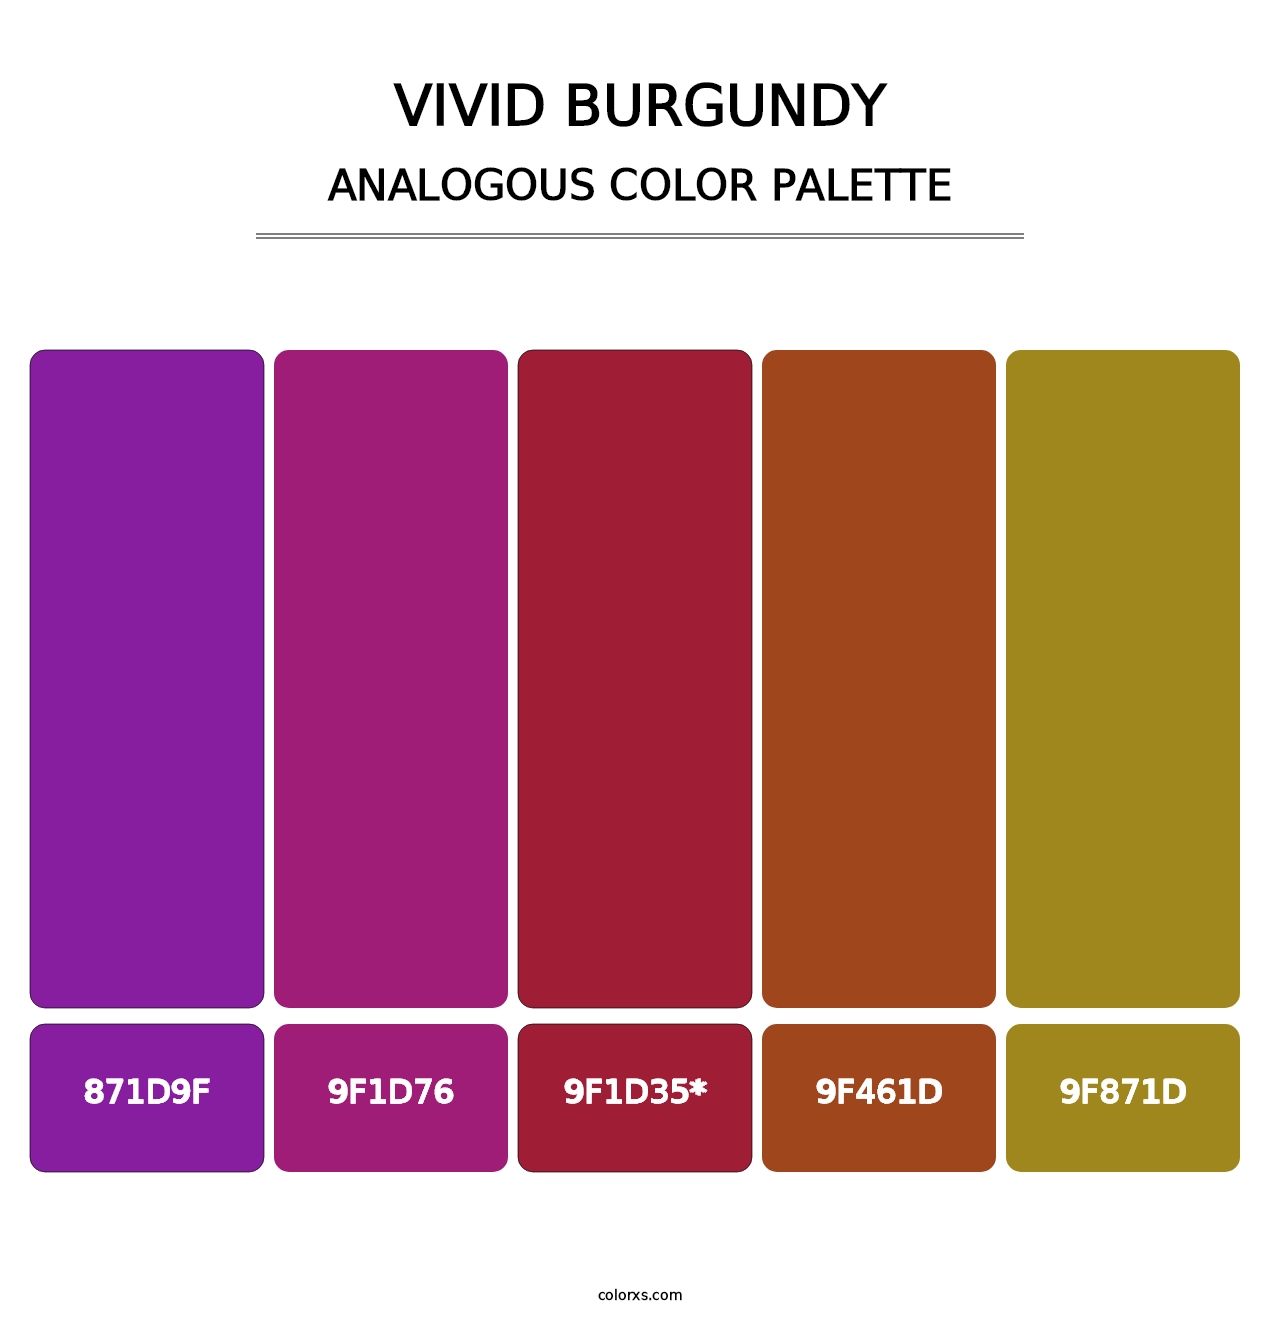 Vivid Burgundy - Analogous Color Palette